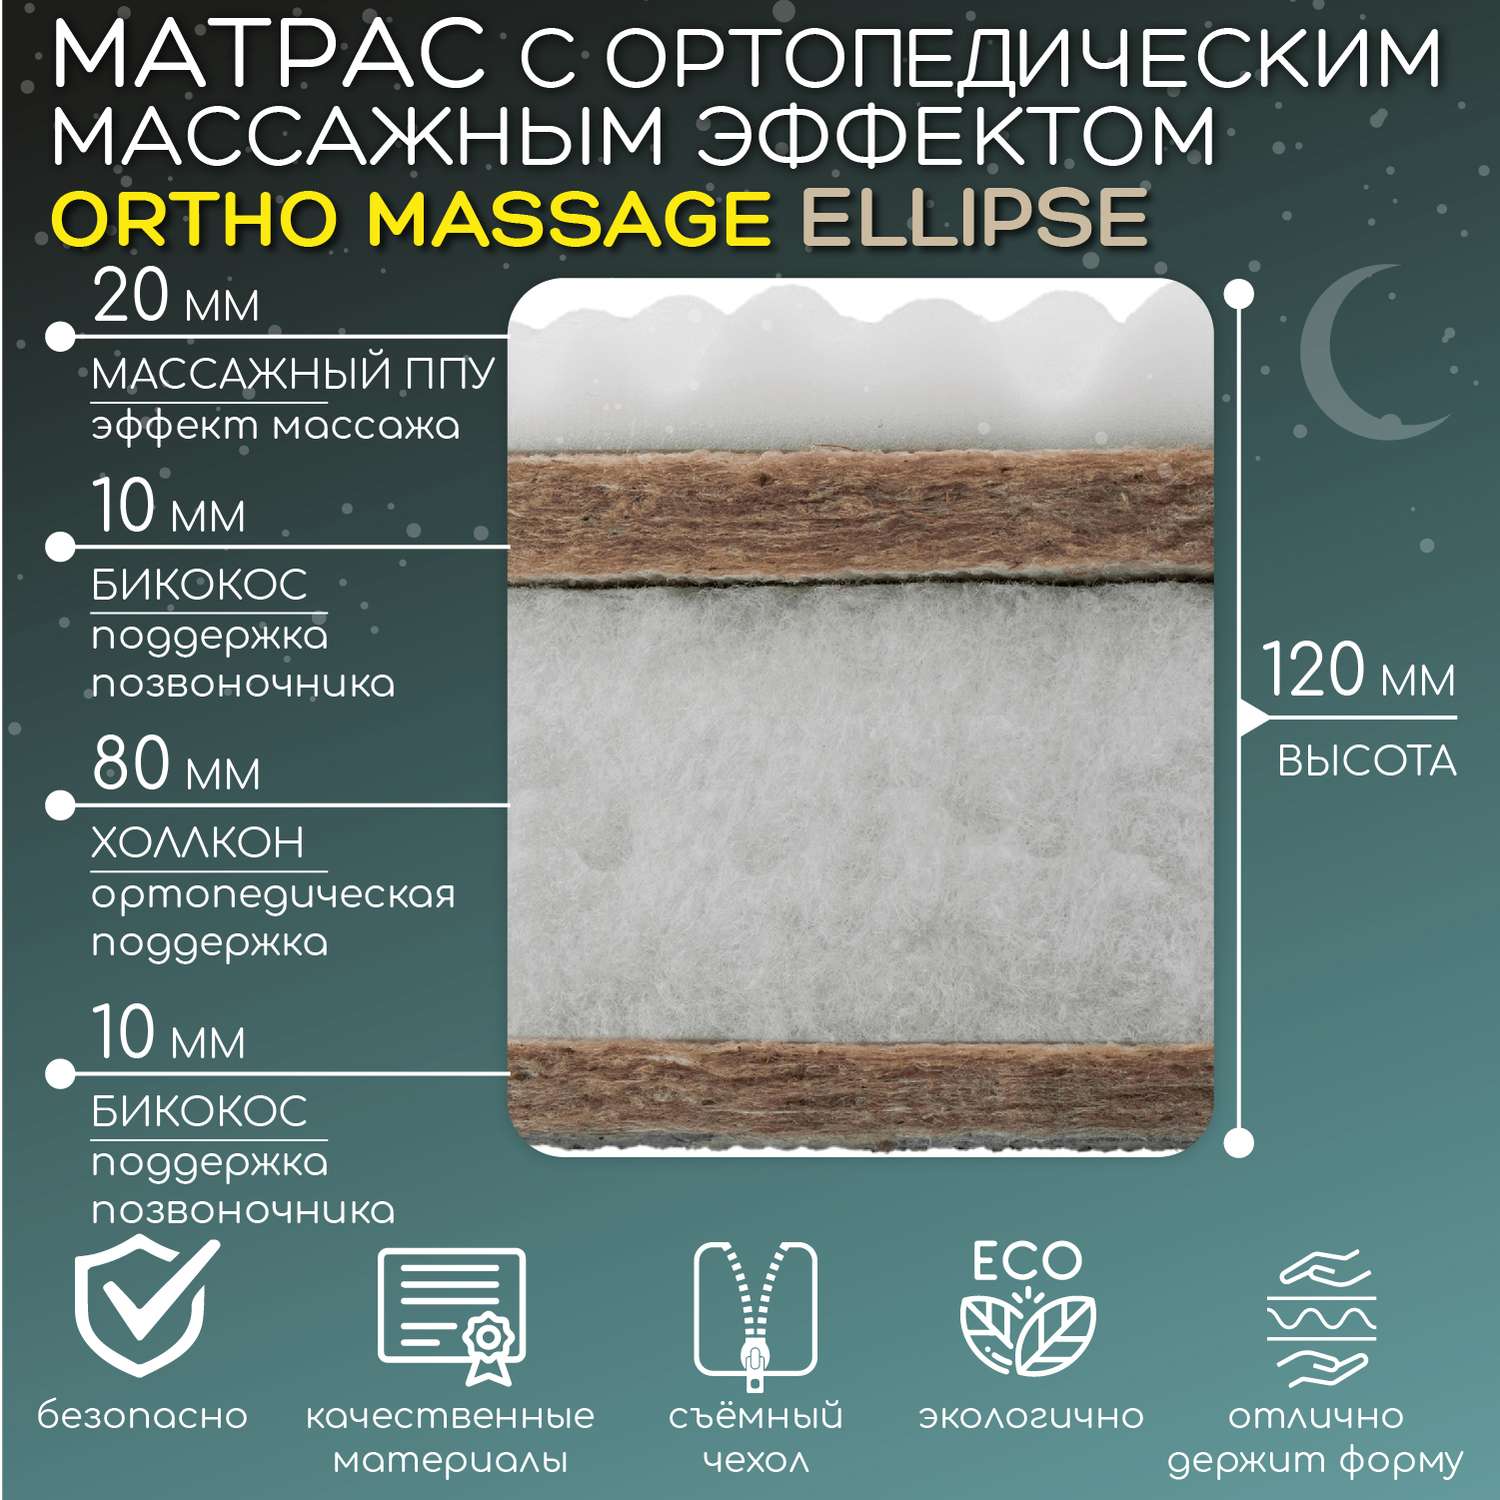 Матрас Amarobaby Ortho Massage Ellipse AMARO-331275-OM - фото 3